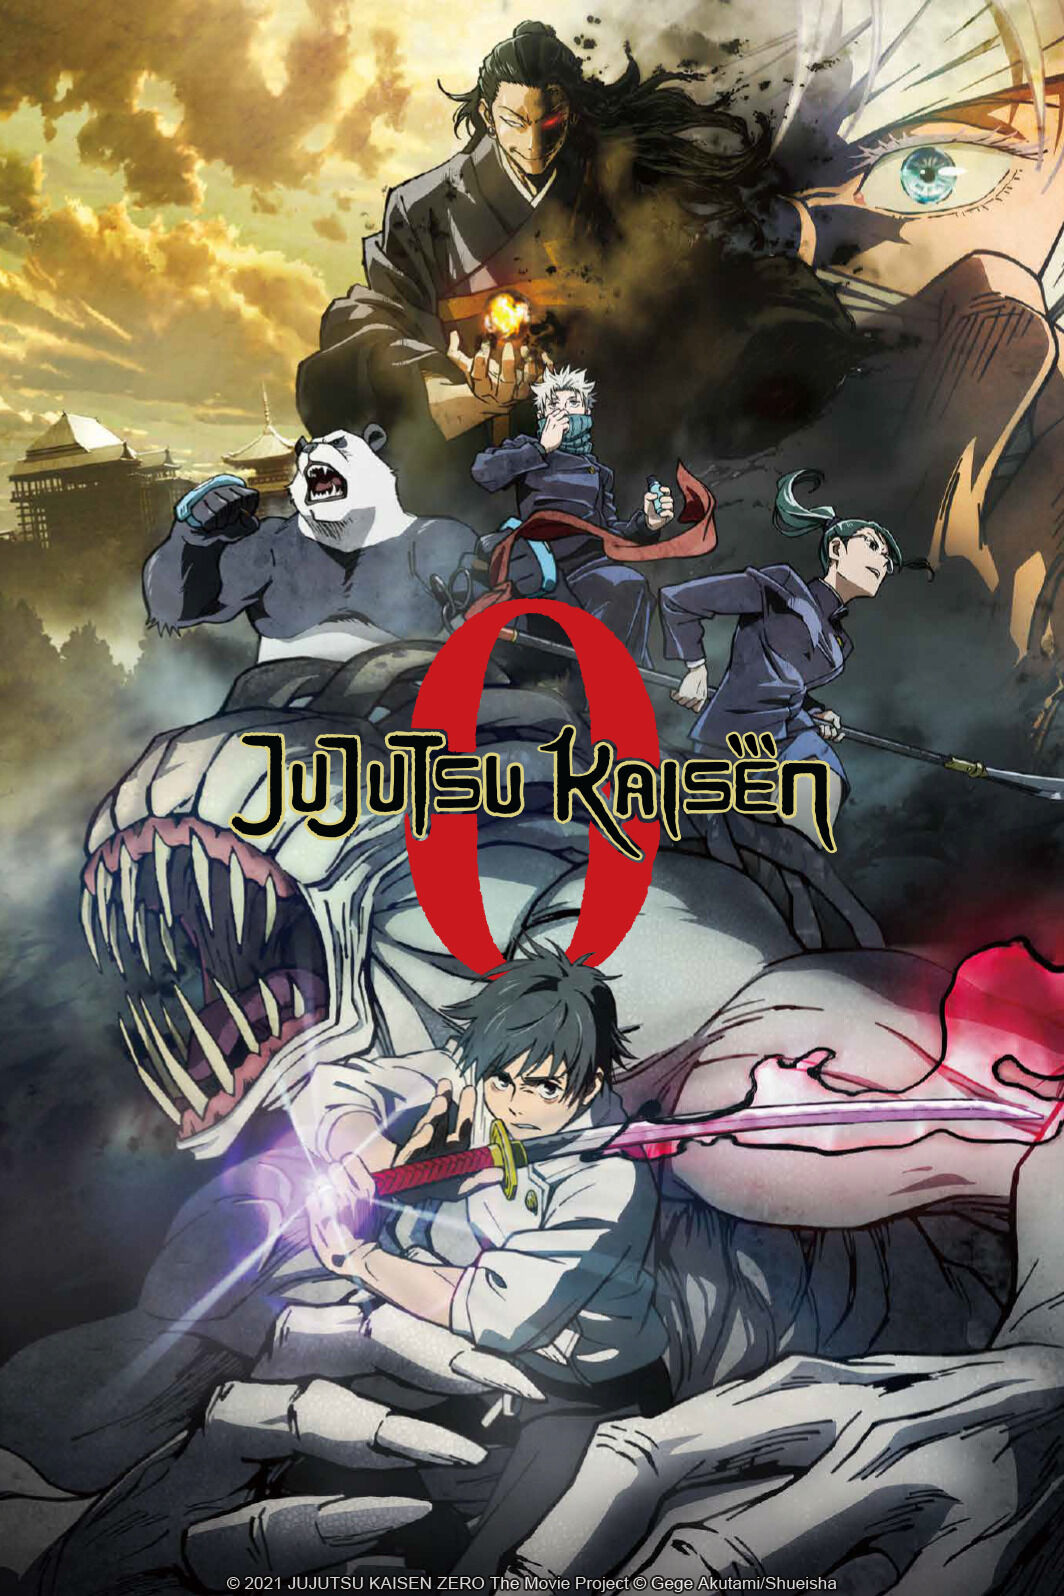 Jujutsu Kaisen 0 Movie「AMV」- Monster ♫ 